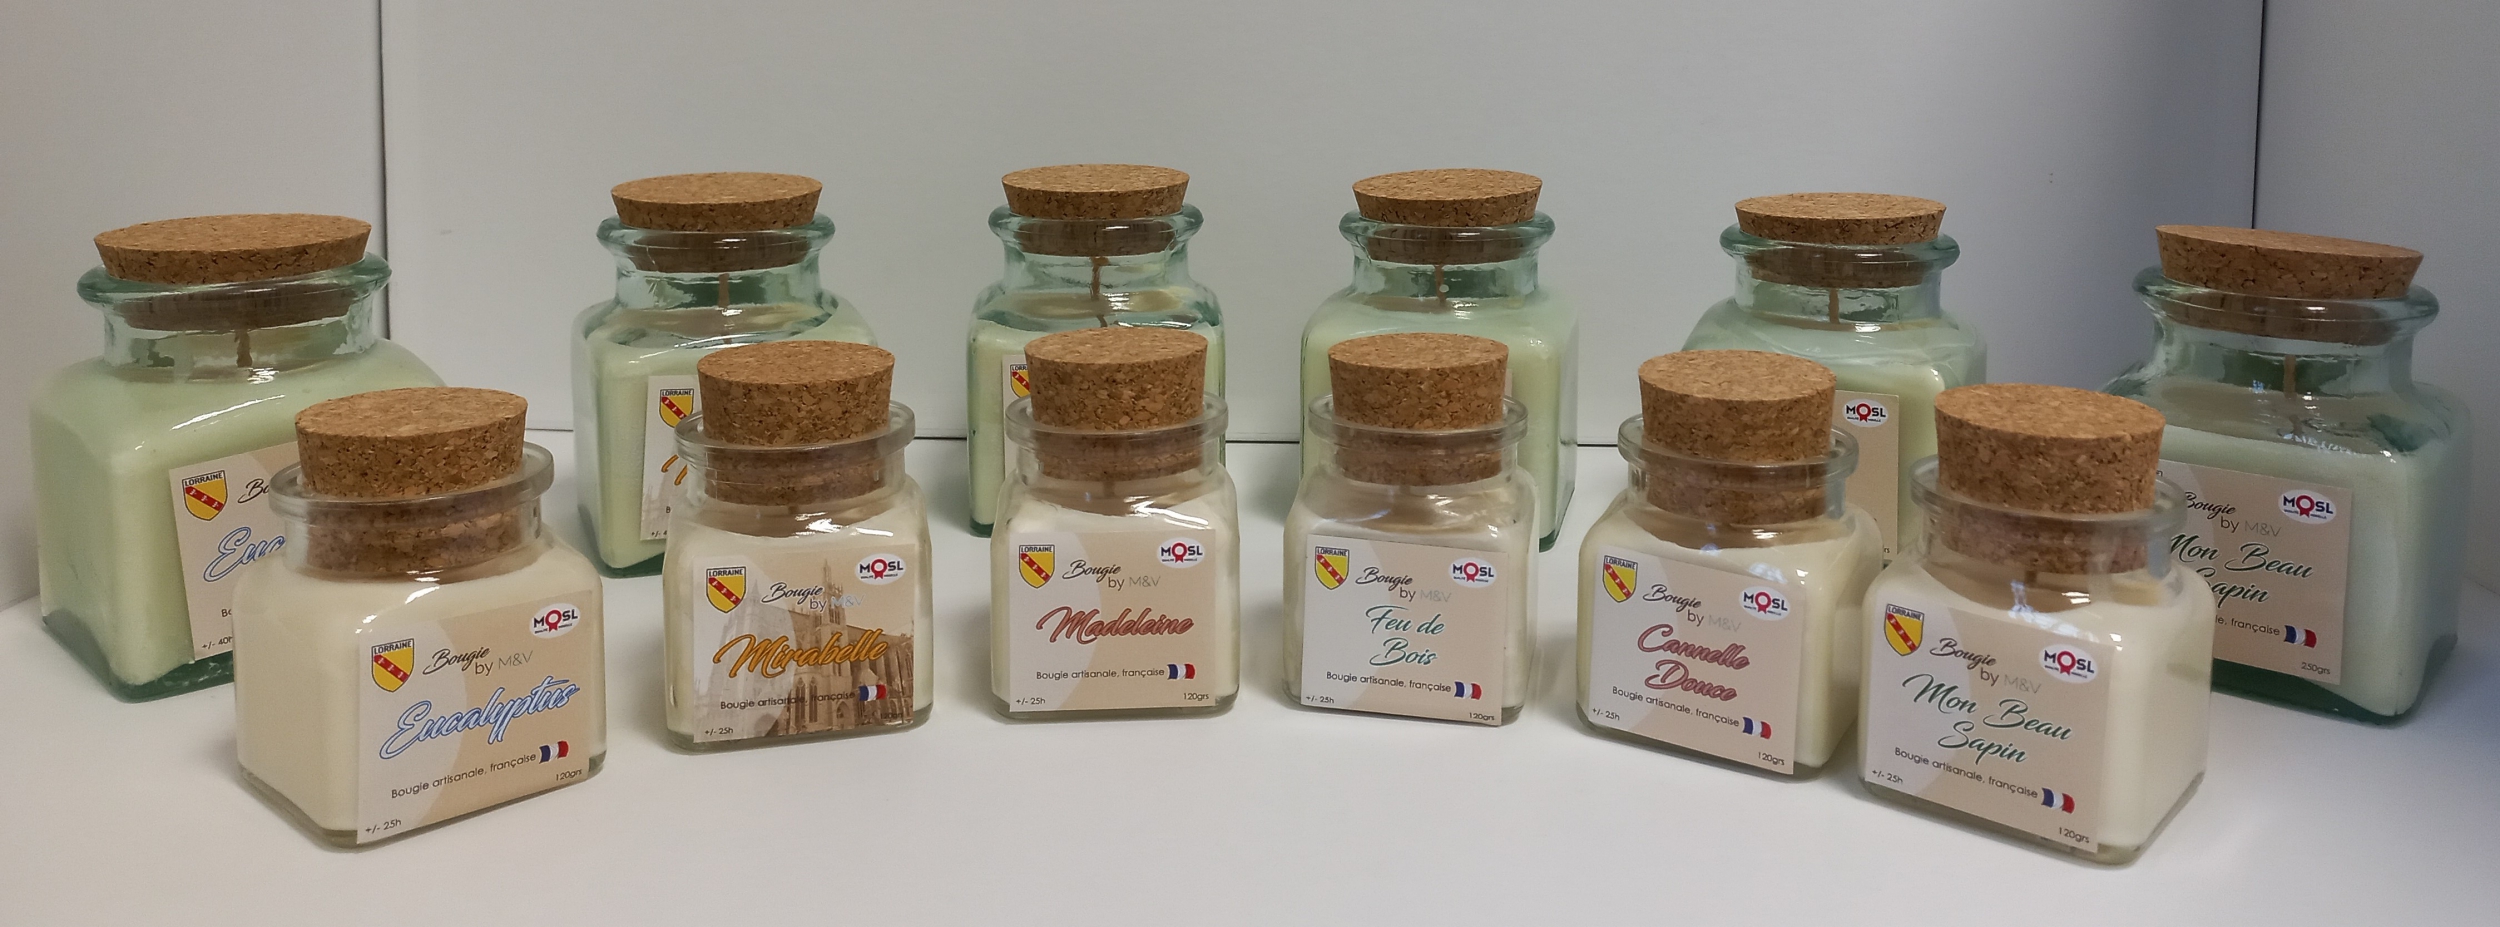 Bougies naturelles dans des contenants en verre recyclé : parfums cannelle douce, eucalyptus, mon beau sapin, feu de bois, madeleine et mirabelle de Metz